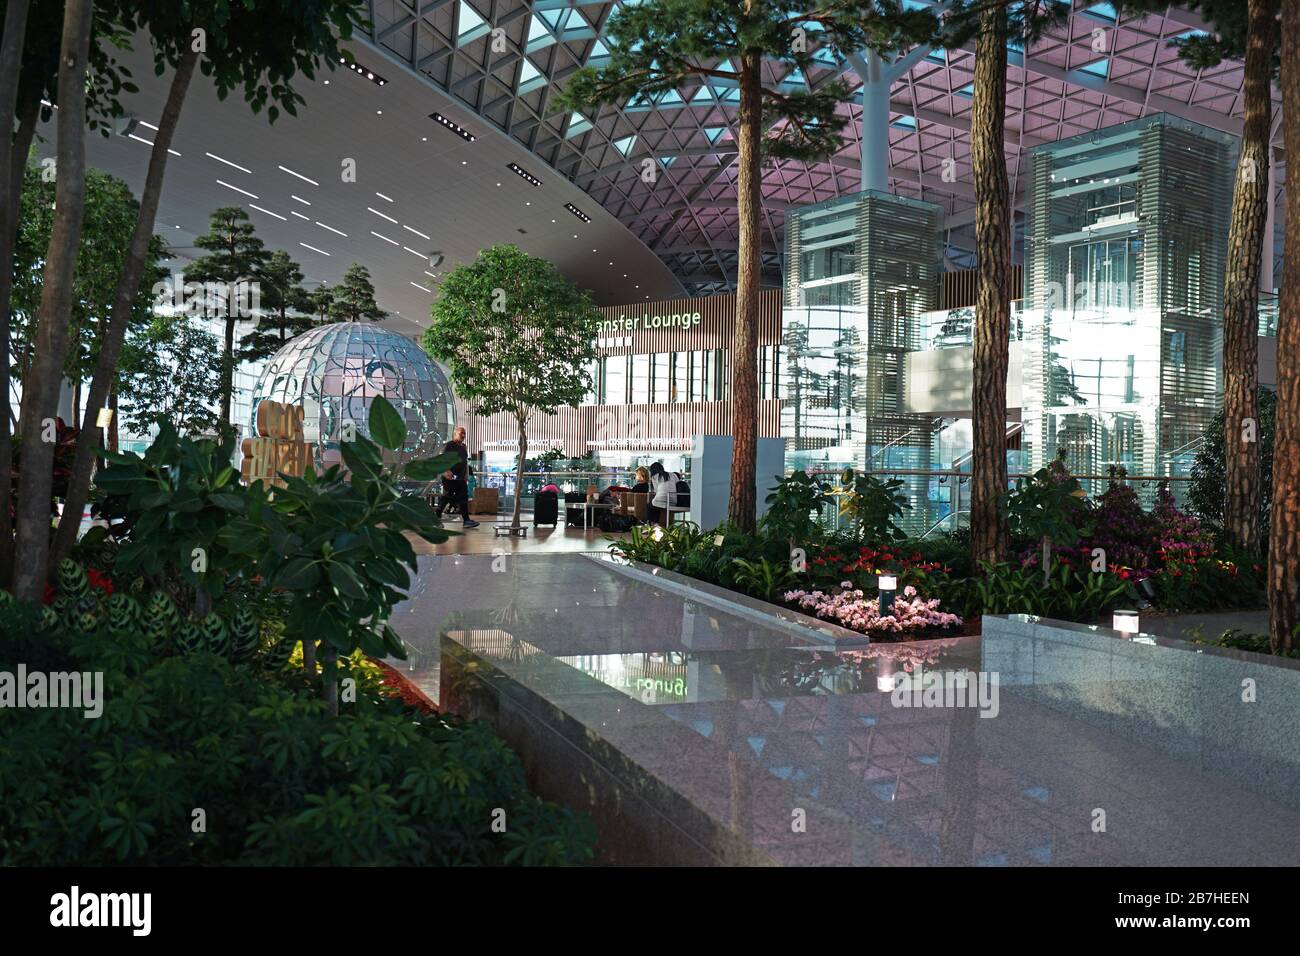 Diseño interior y decoración del "aeropuerto internacional DE INCHEON" -decorado con escultura circular y jardín interior- Seúl, Corea del Sur Foto de stock